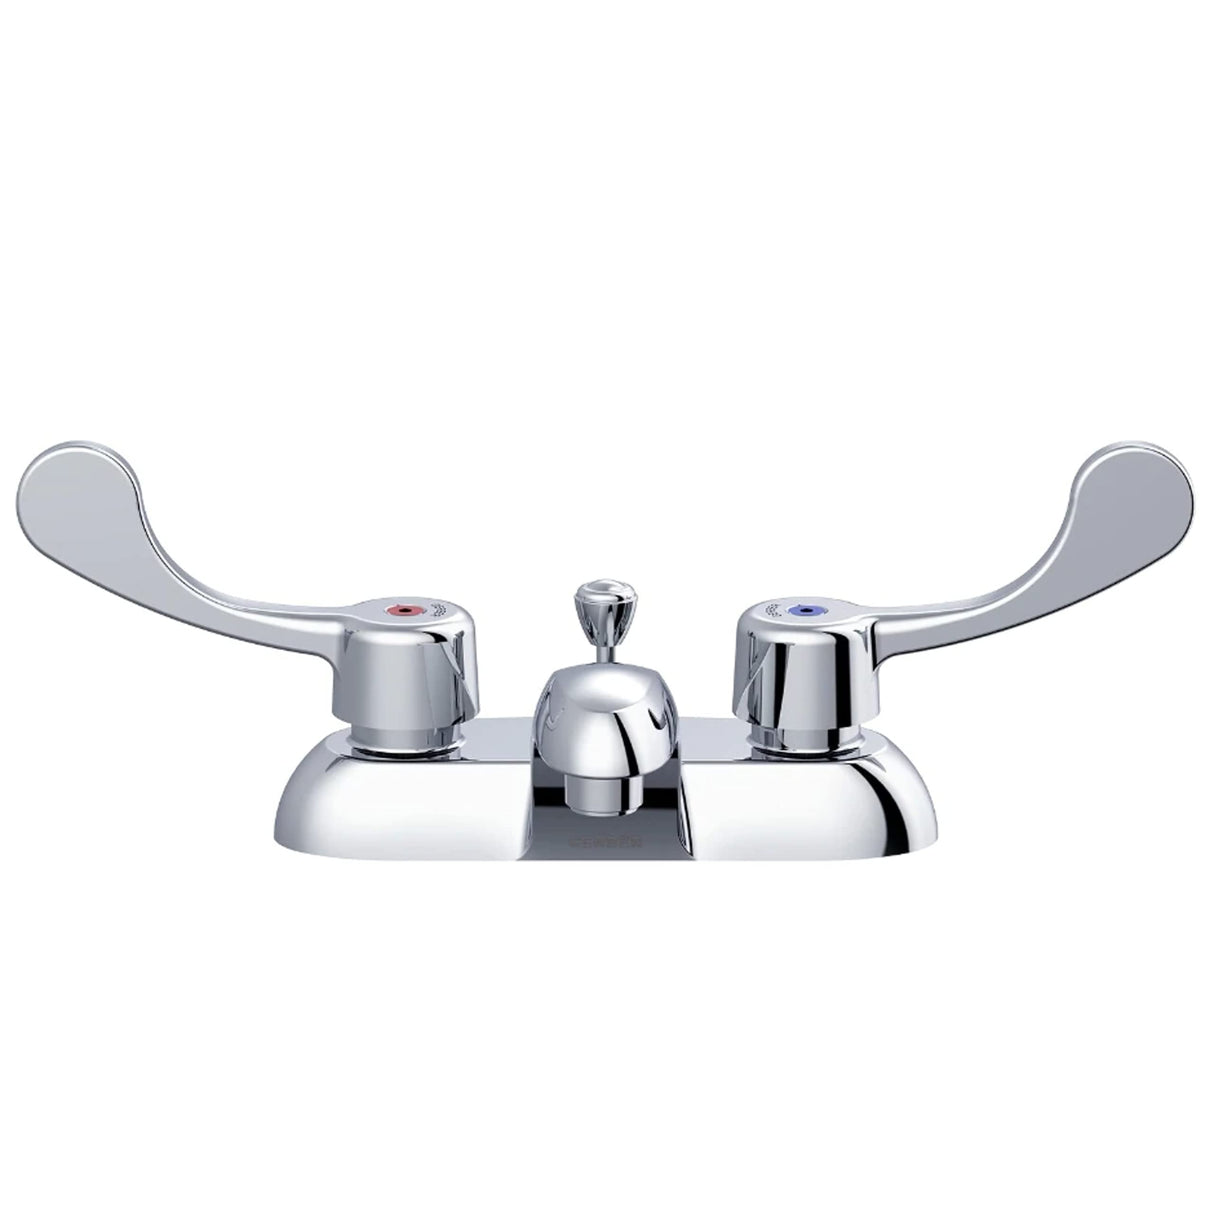 Gerber GC044551 Chrome Commercial Two Handle Centerset Lavatory Faucet W/ Wrist BLA...